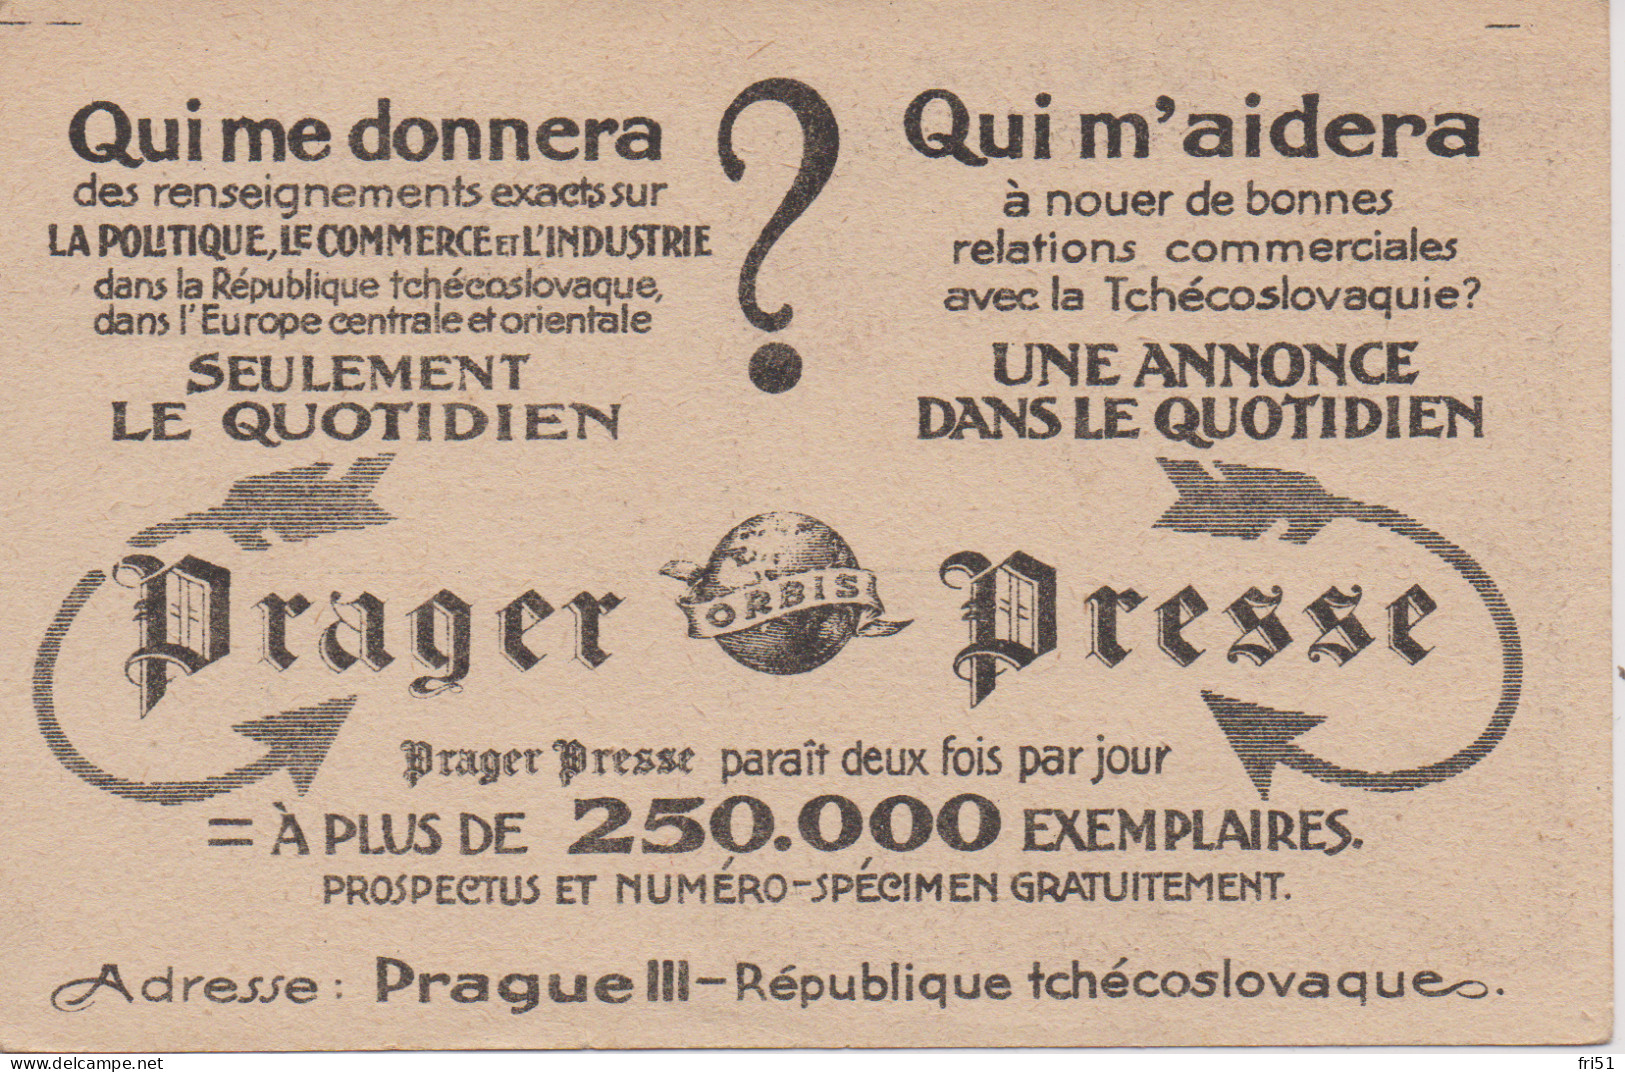 Prager Presse - Tchéquie